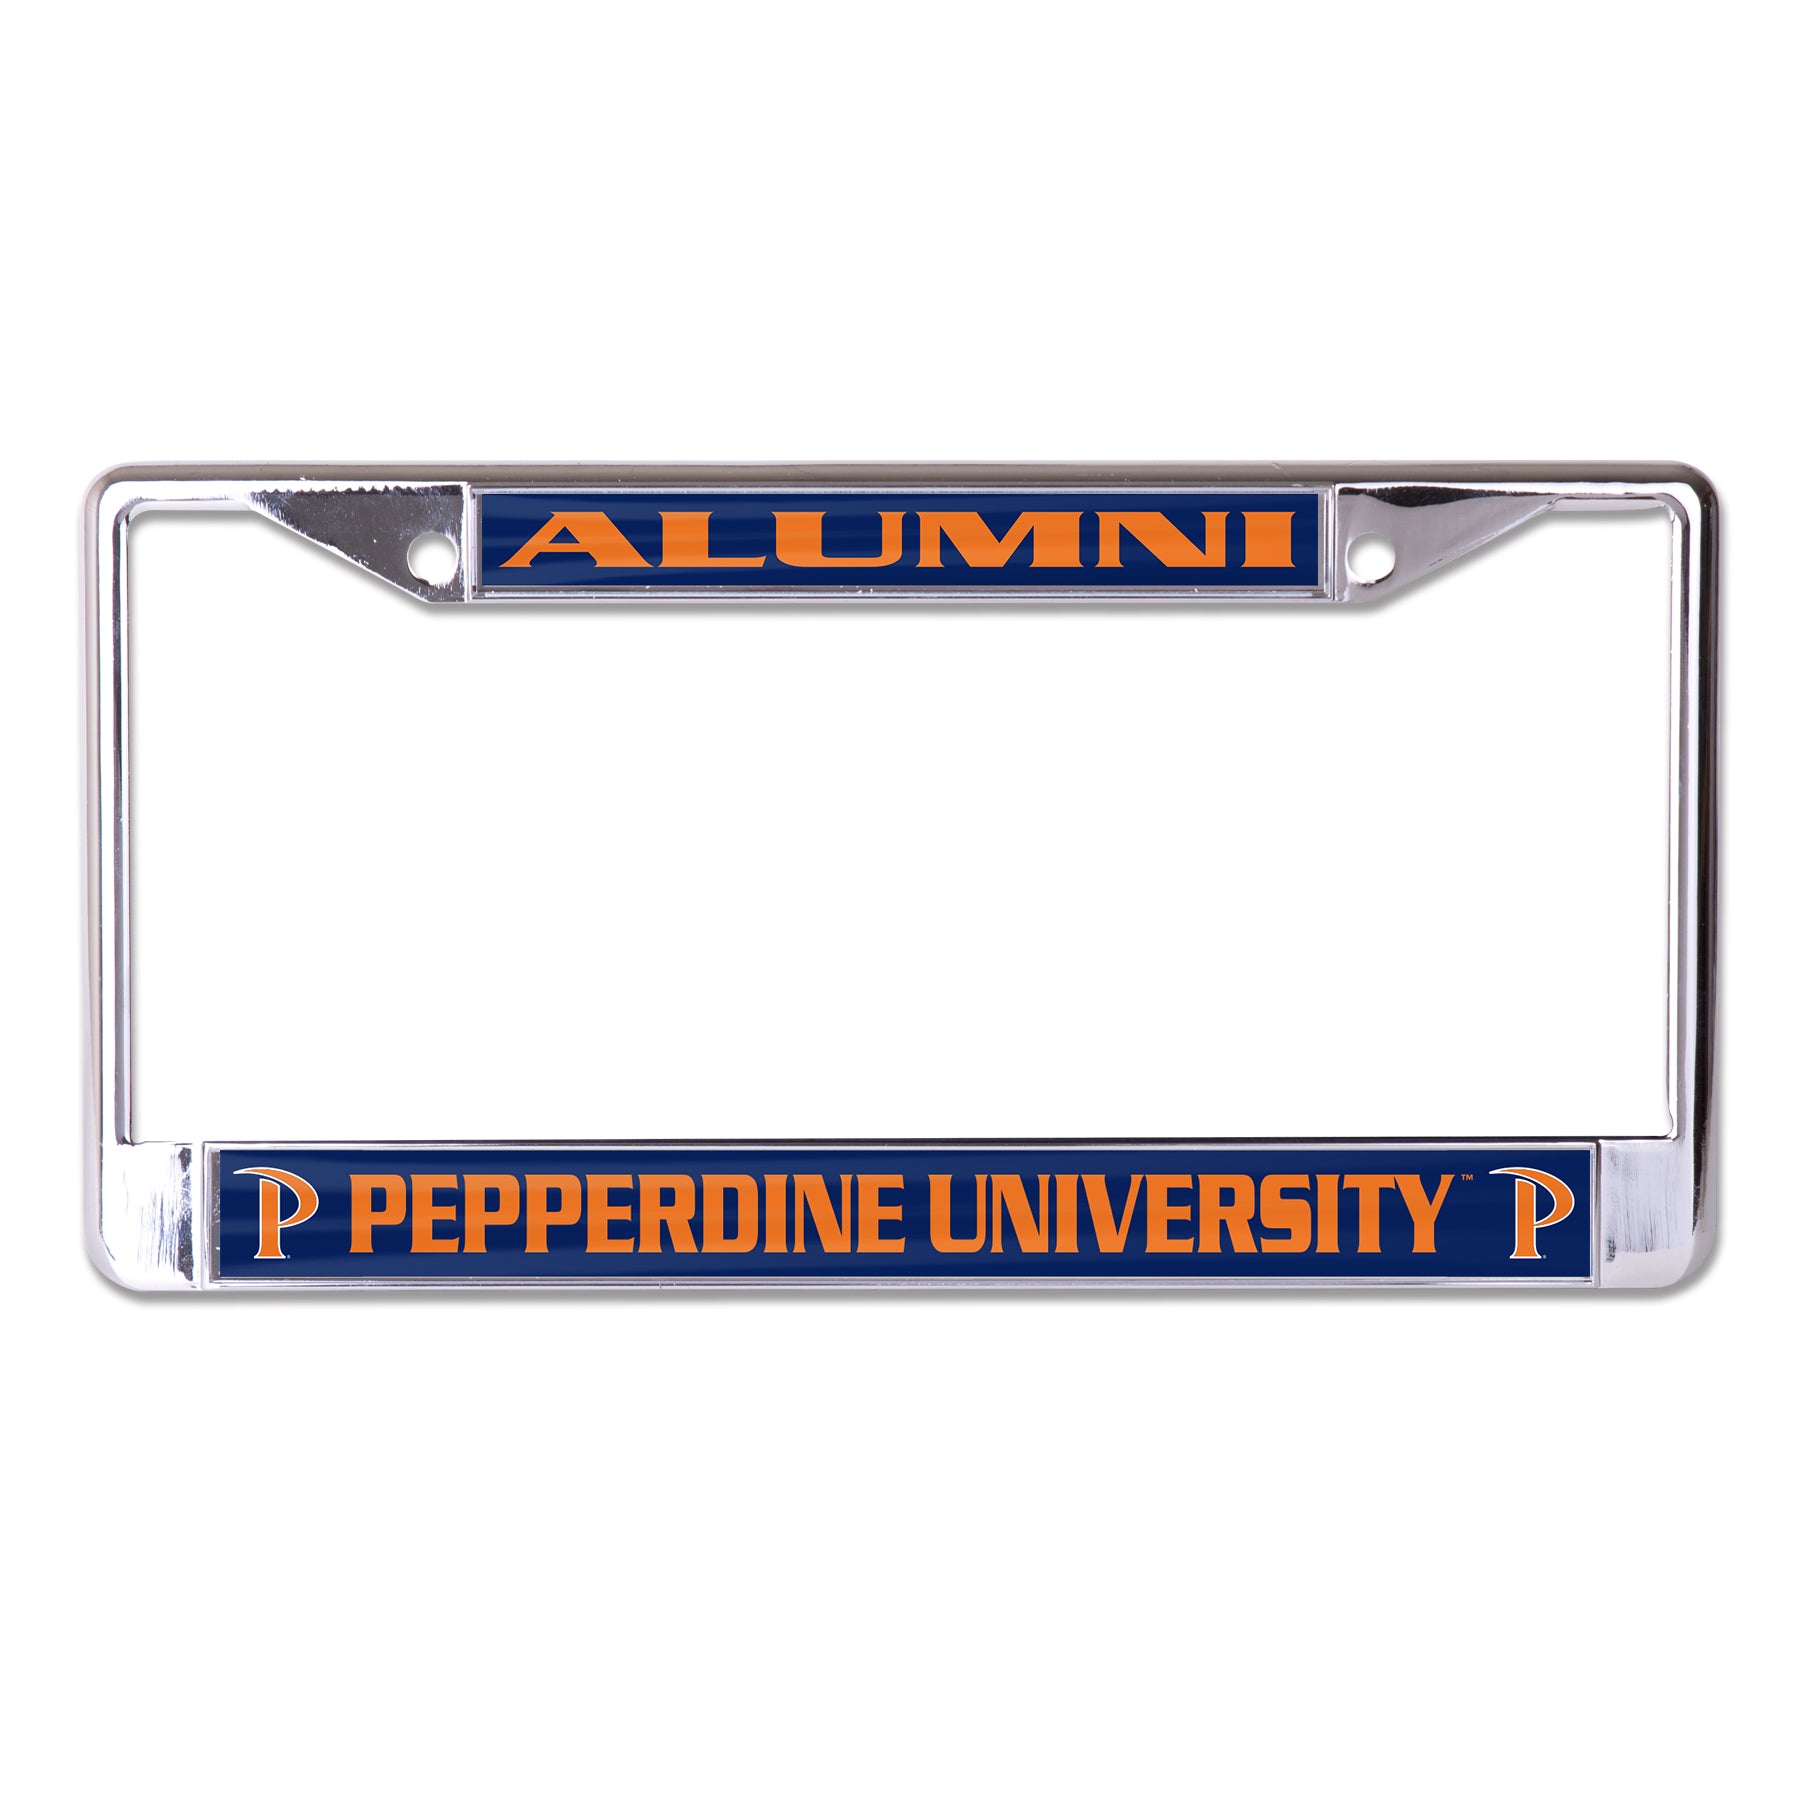 Pepperdine University Alumni Chrome License Plate Frame